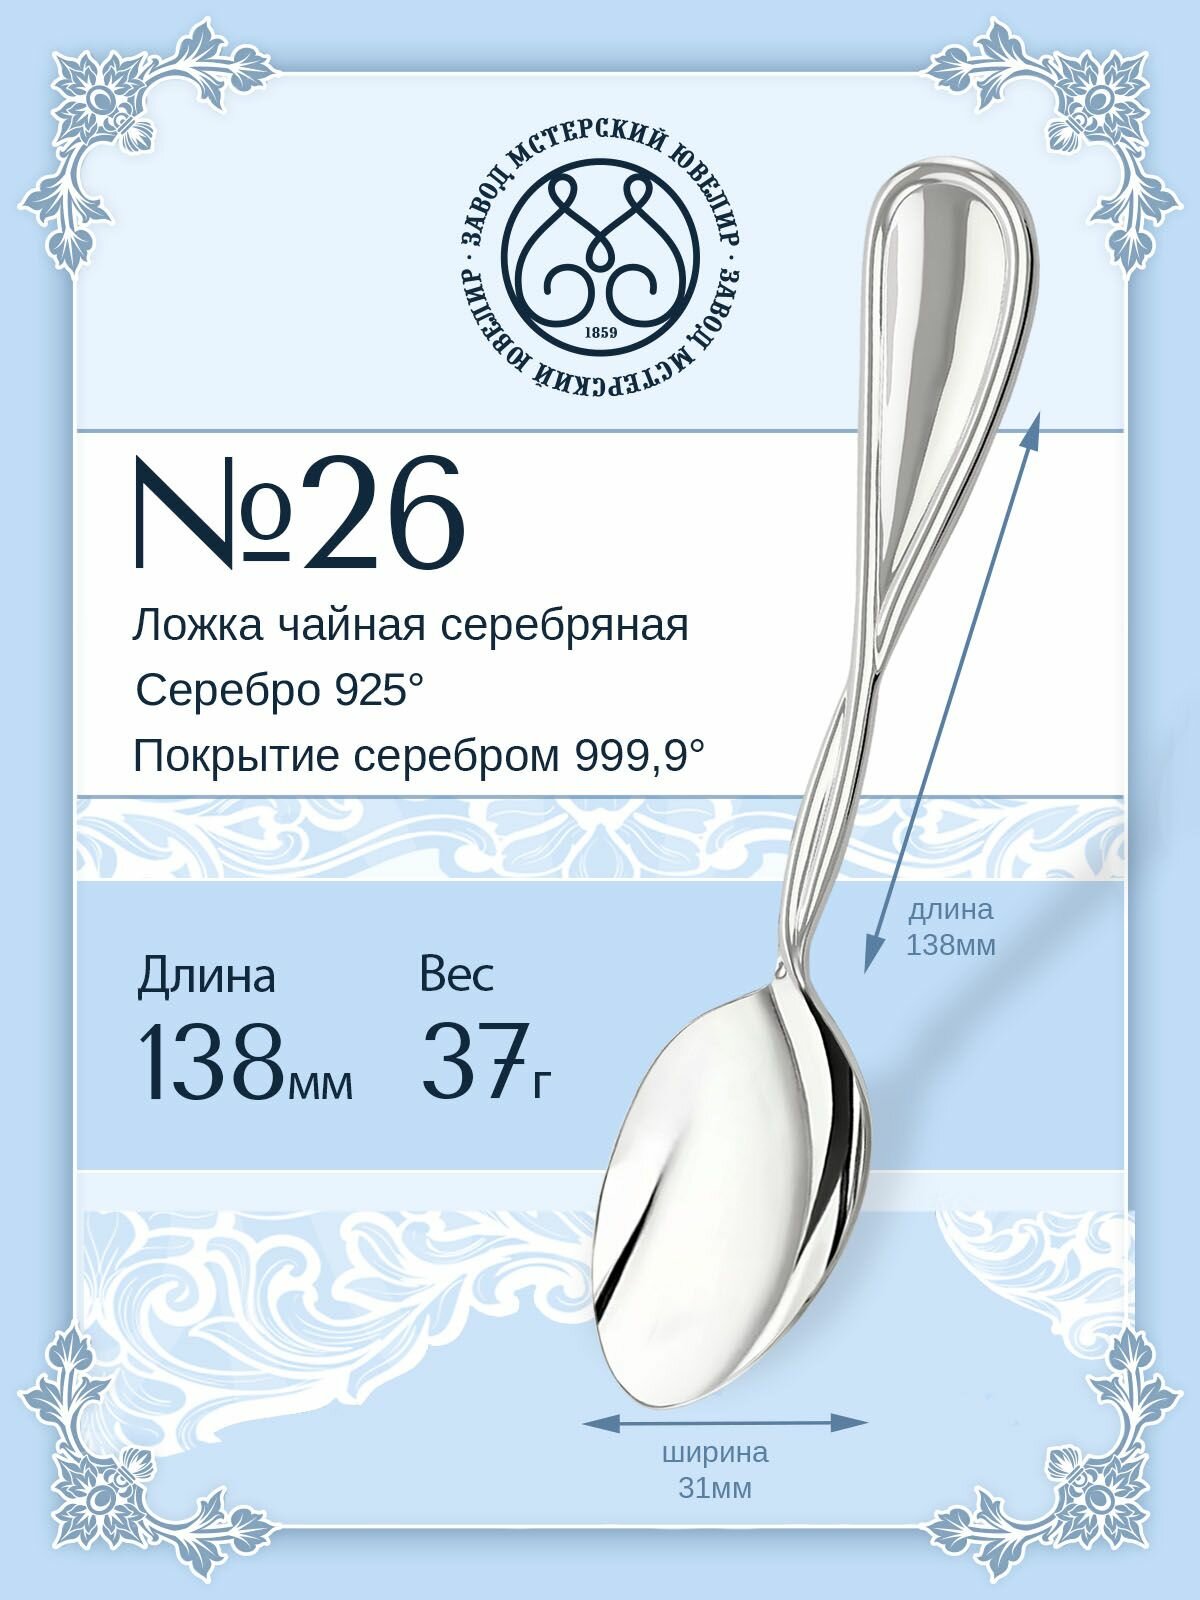 Ложка серебряная Мстерский ювелир чайная №26